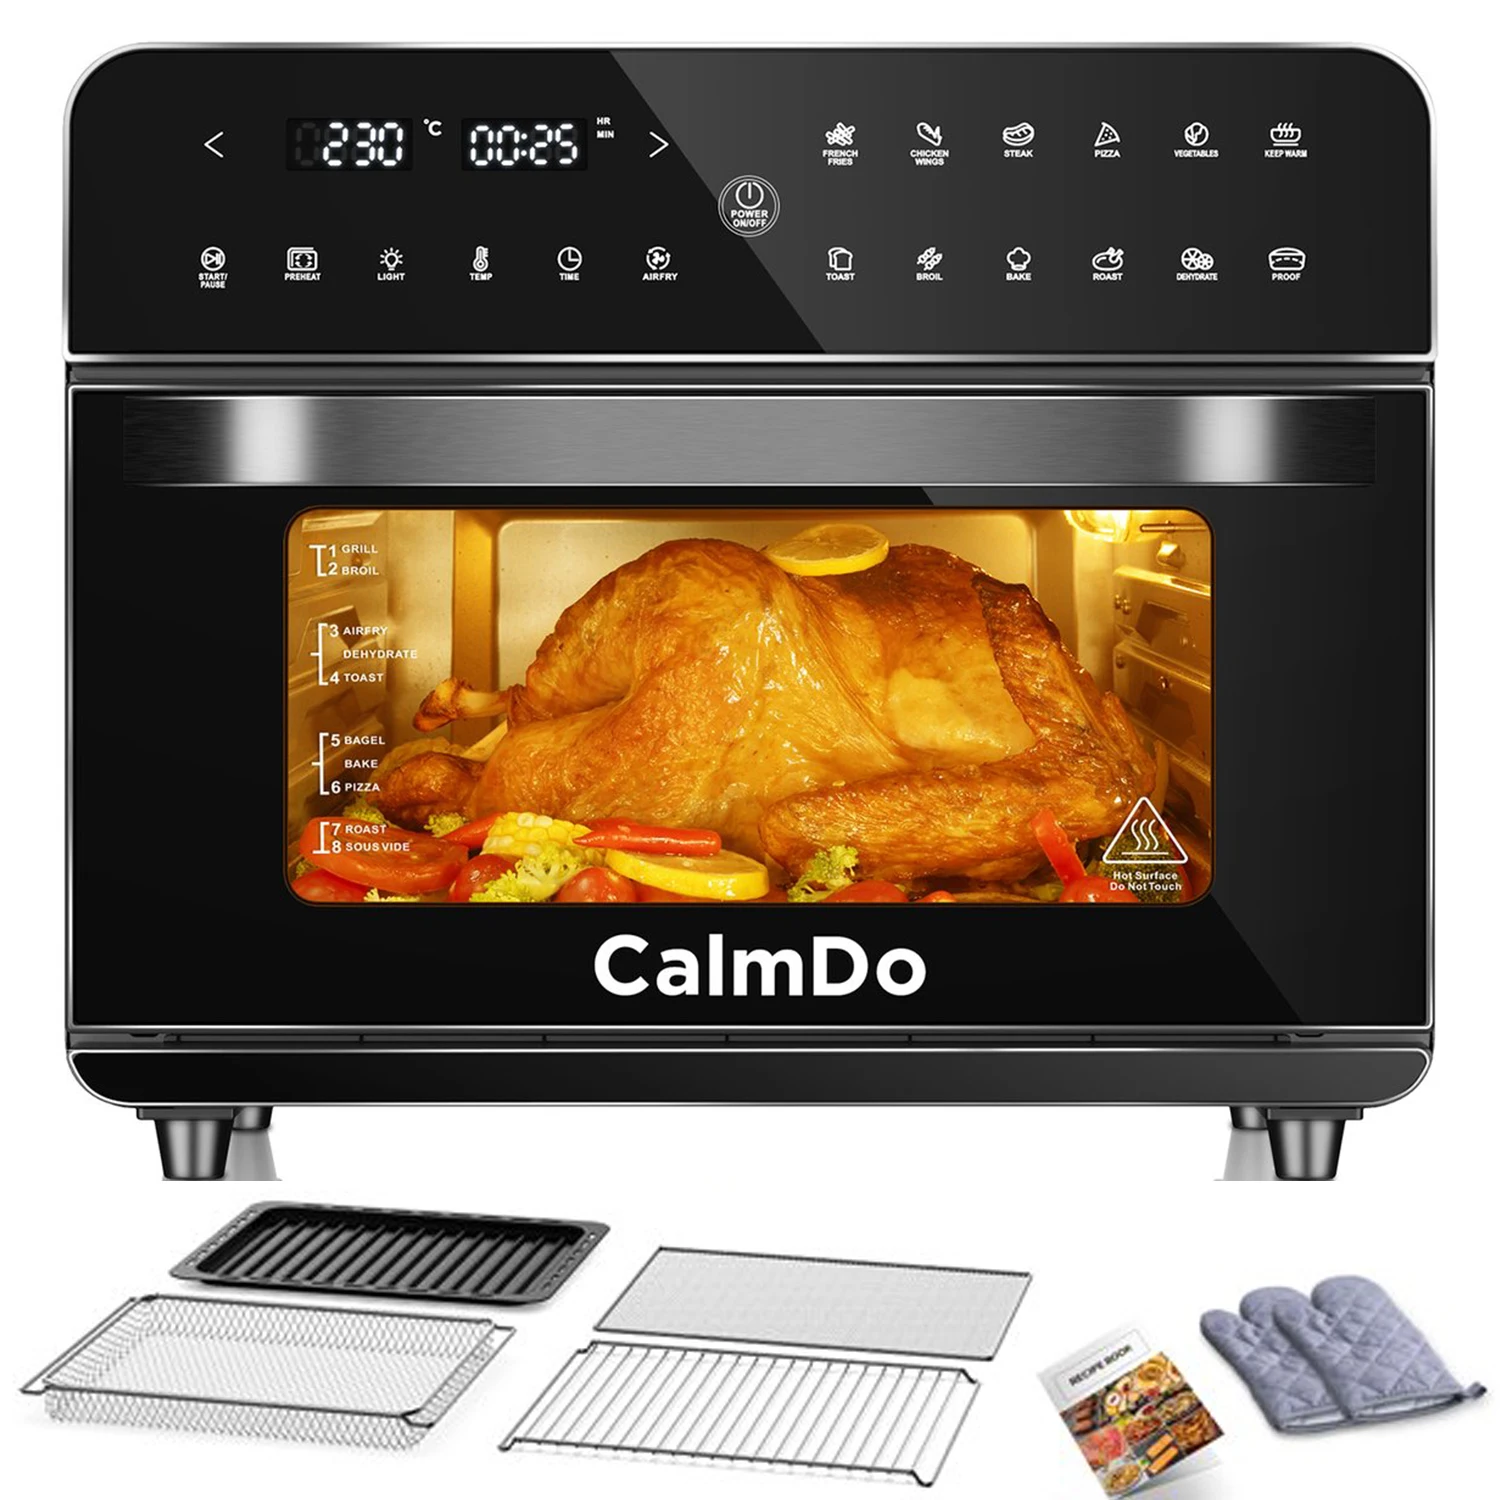 Духовка-тостер CalmDo 25L26.3QT 1800 Вт с светодиодный вым сенсорным экраном - купить по